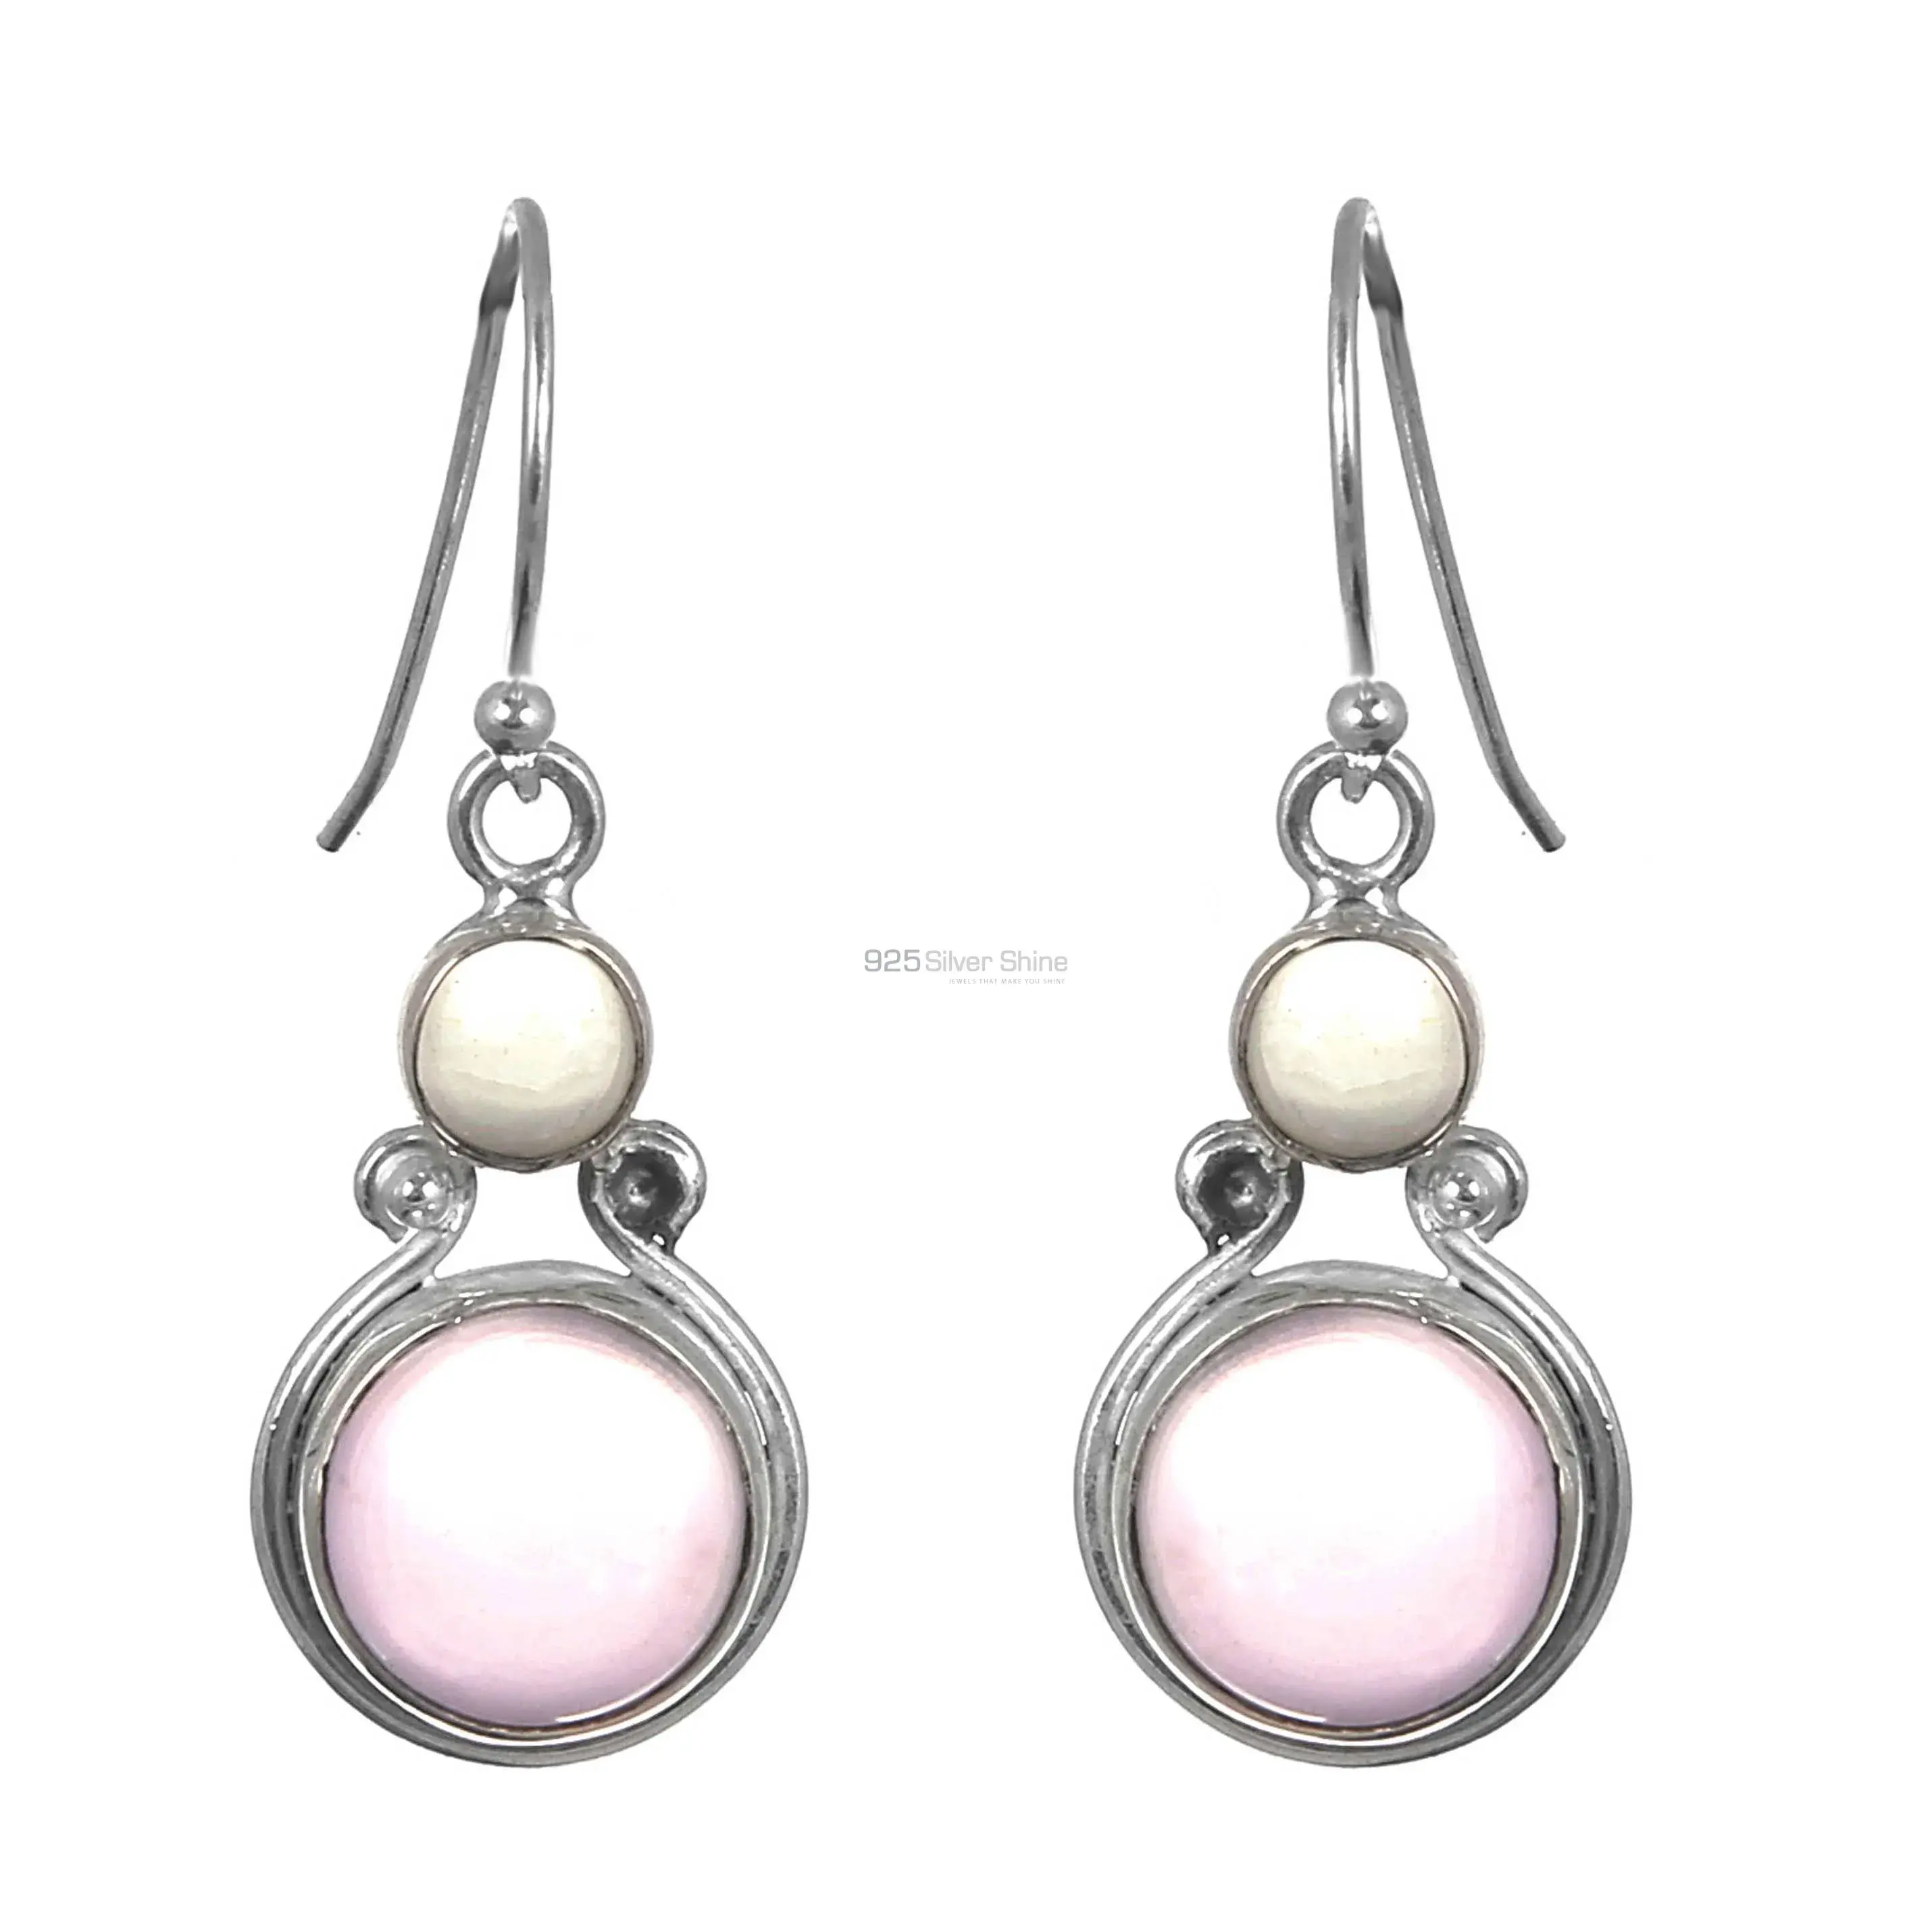 Rose Quartz Gemstone Earrings In Sterling Silver Jewelry 925SE169